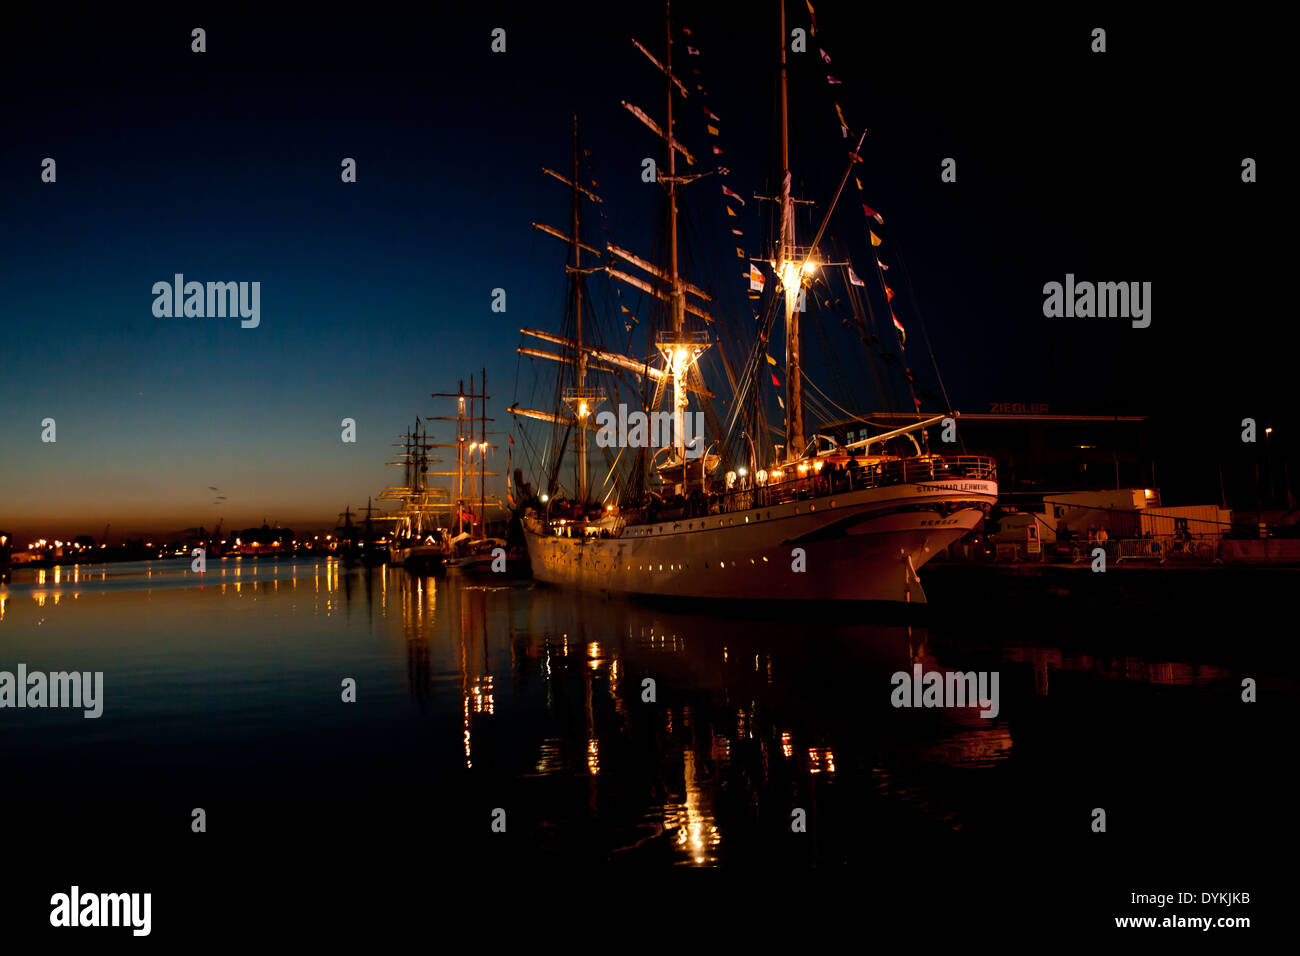 19e siècle navire à voiles de la Tall Ship's Race 2013 à la nuit, magnifiquement éclairé. Banque D'Images